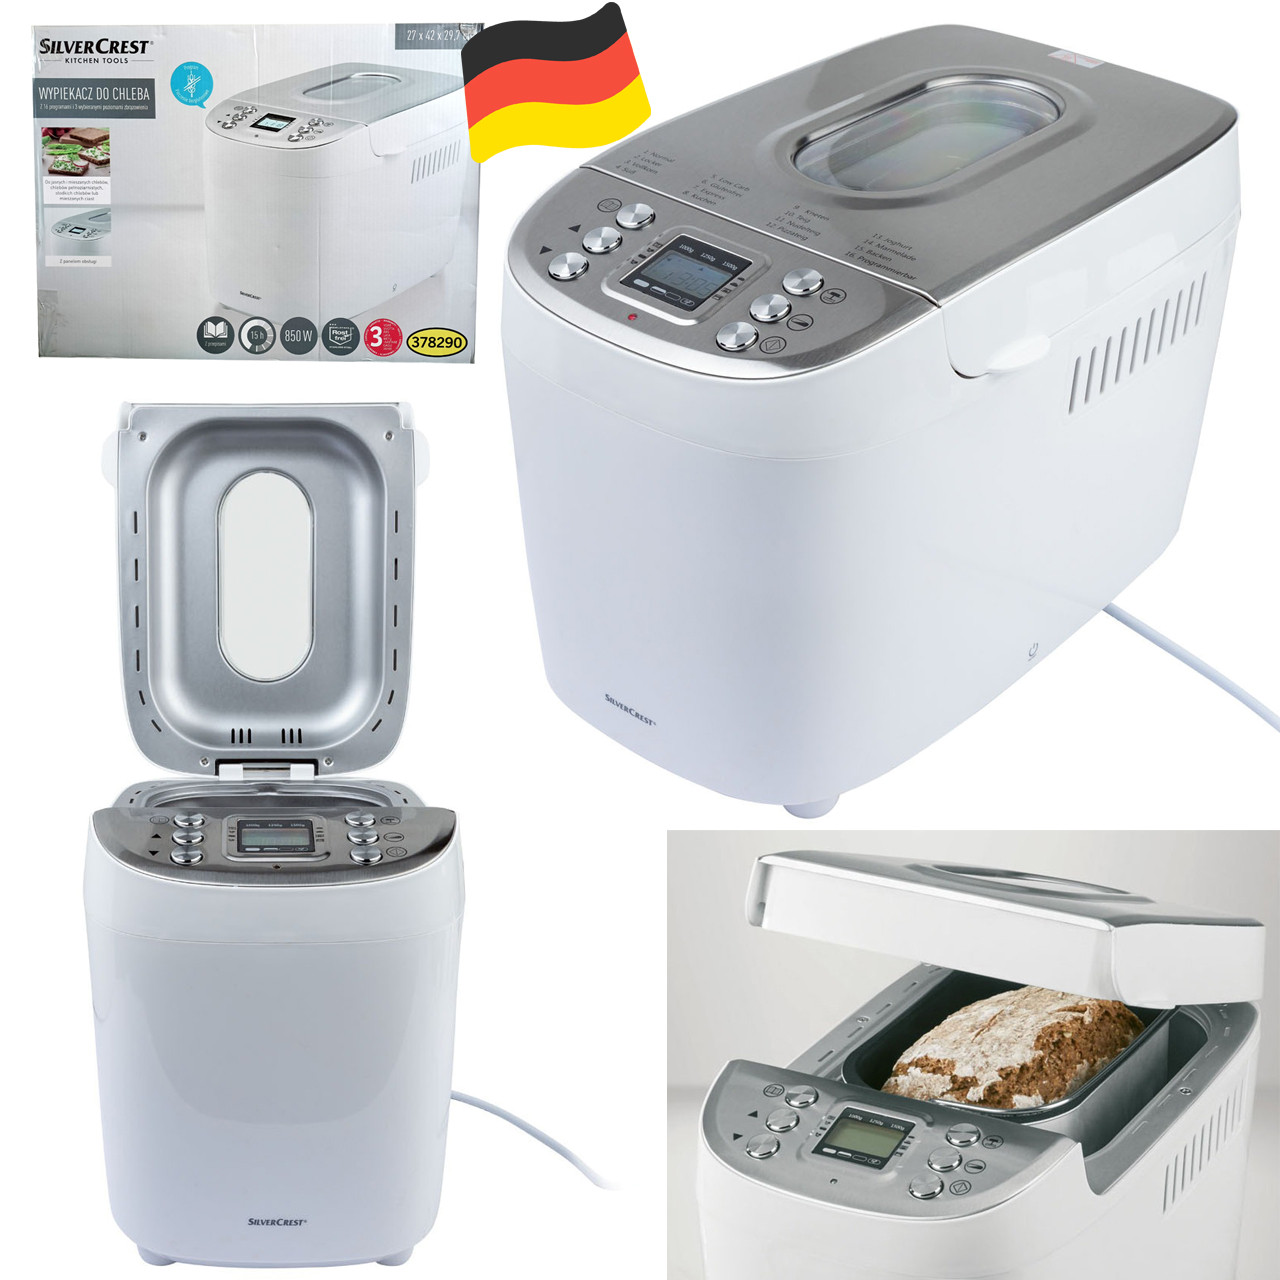 (ID#1604507310), Німеччина) на 16 купить SBB SilverCrest л, 3749 850 Повністю РК-дисплей, 3 хлібопіч Вт, програм, E1 (850 ₴, автоматична цена: